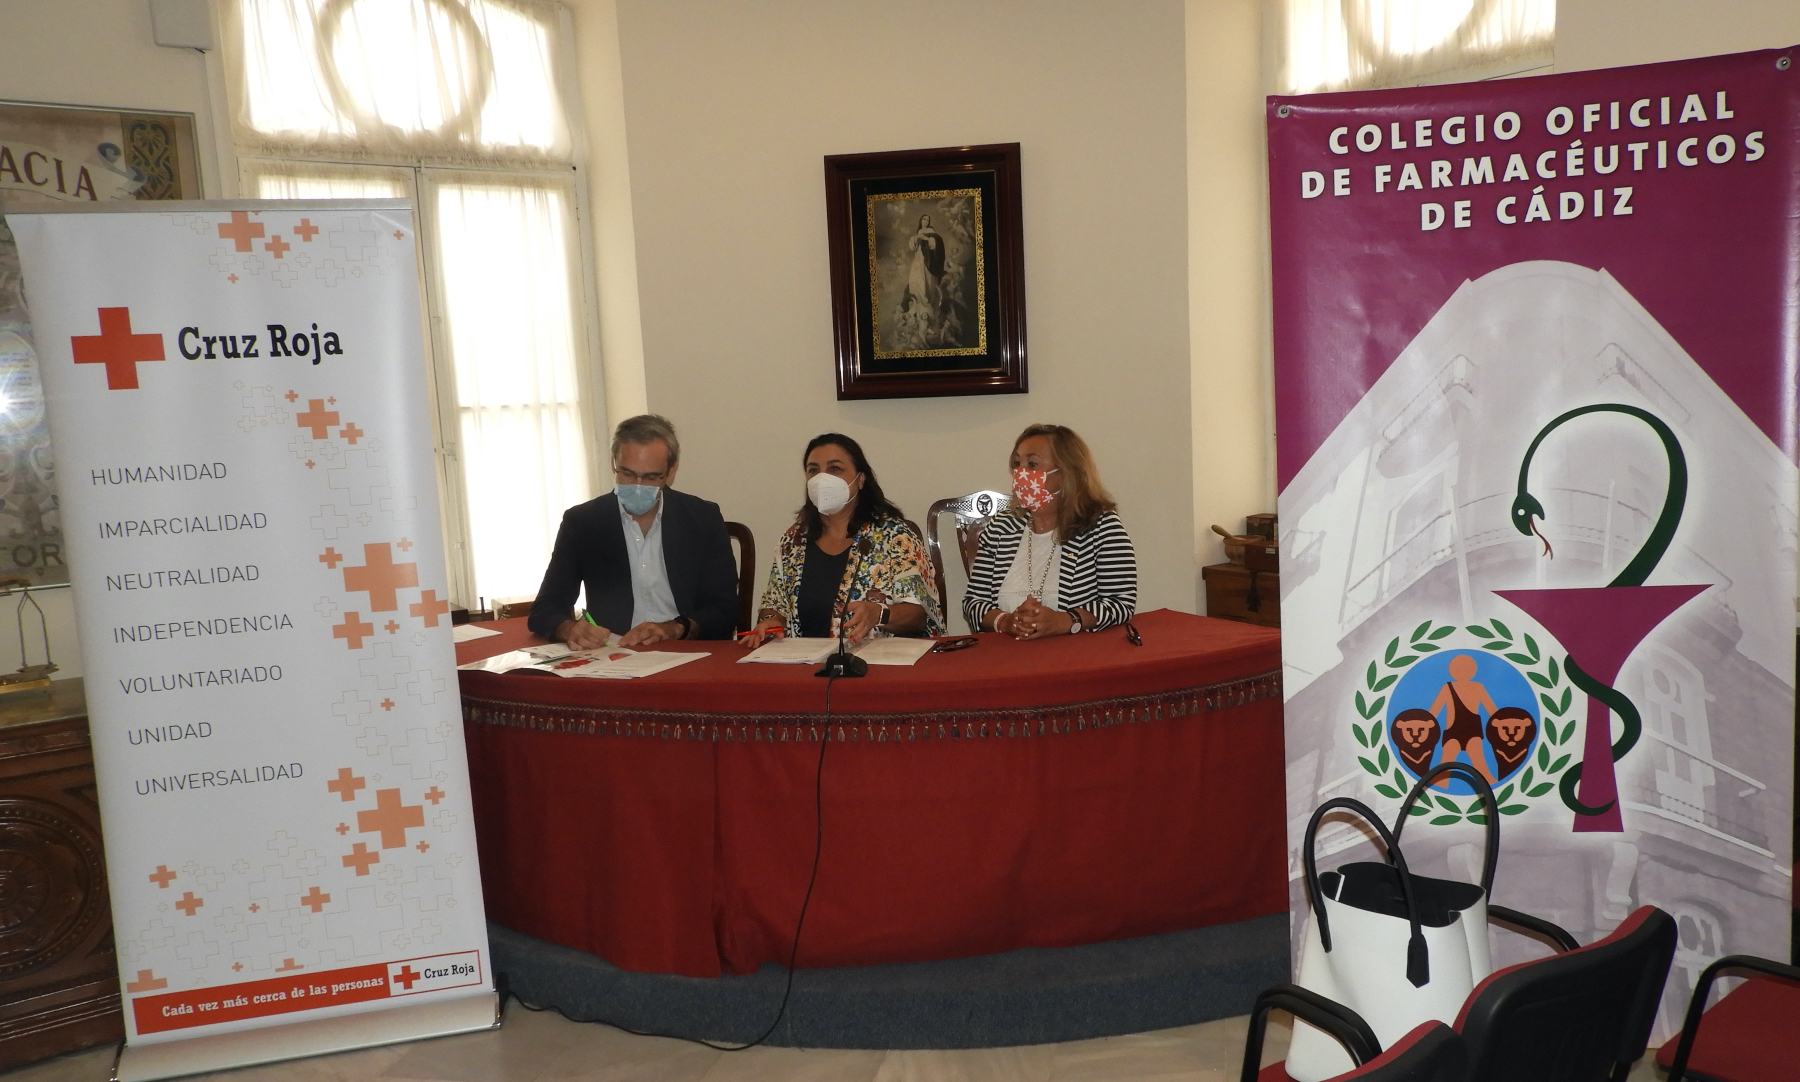 Cruz Roja Española y el Colegio de Farmacéuticos de Cádiz estrechan sus lazos de colaboración para mejorar su labor de promoción de la salud entre la población